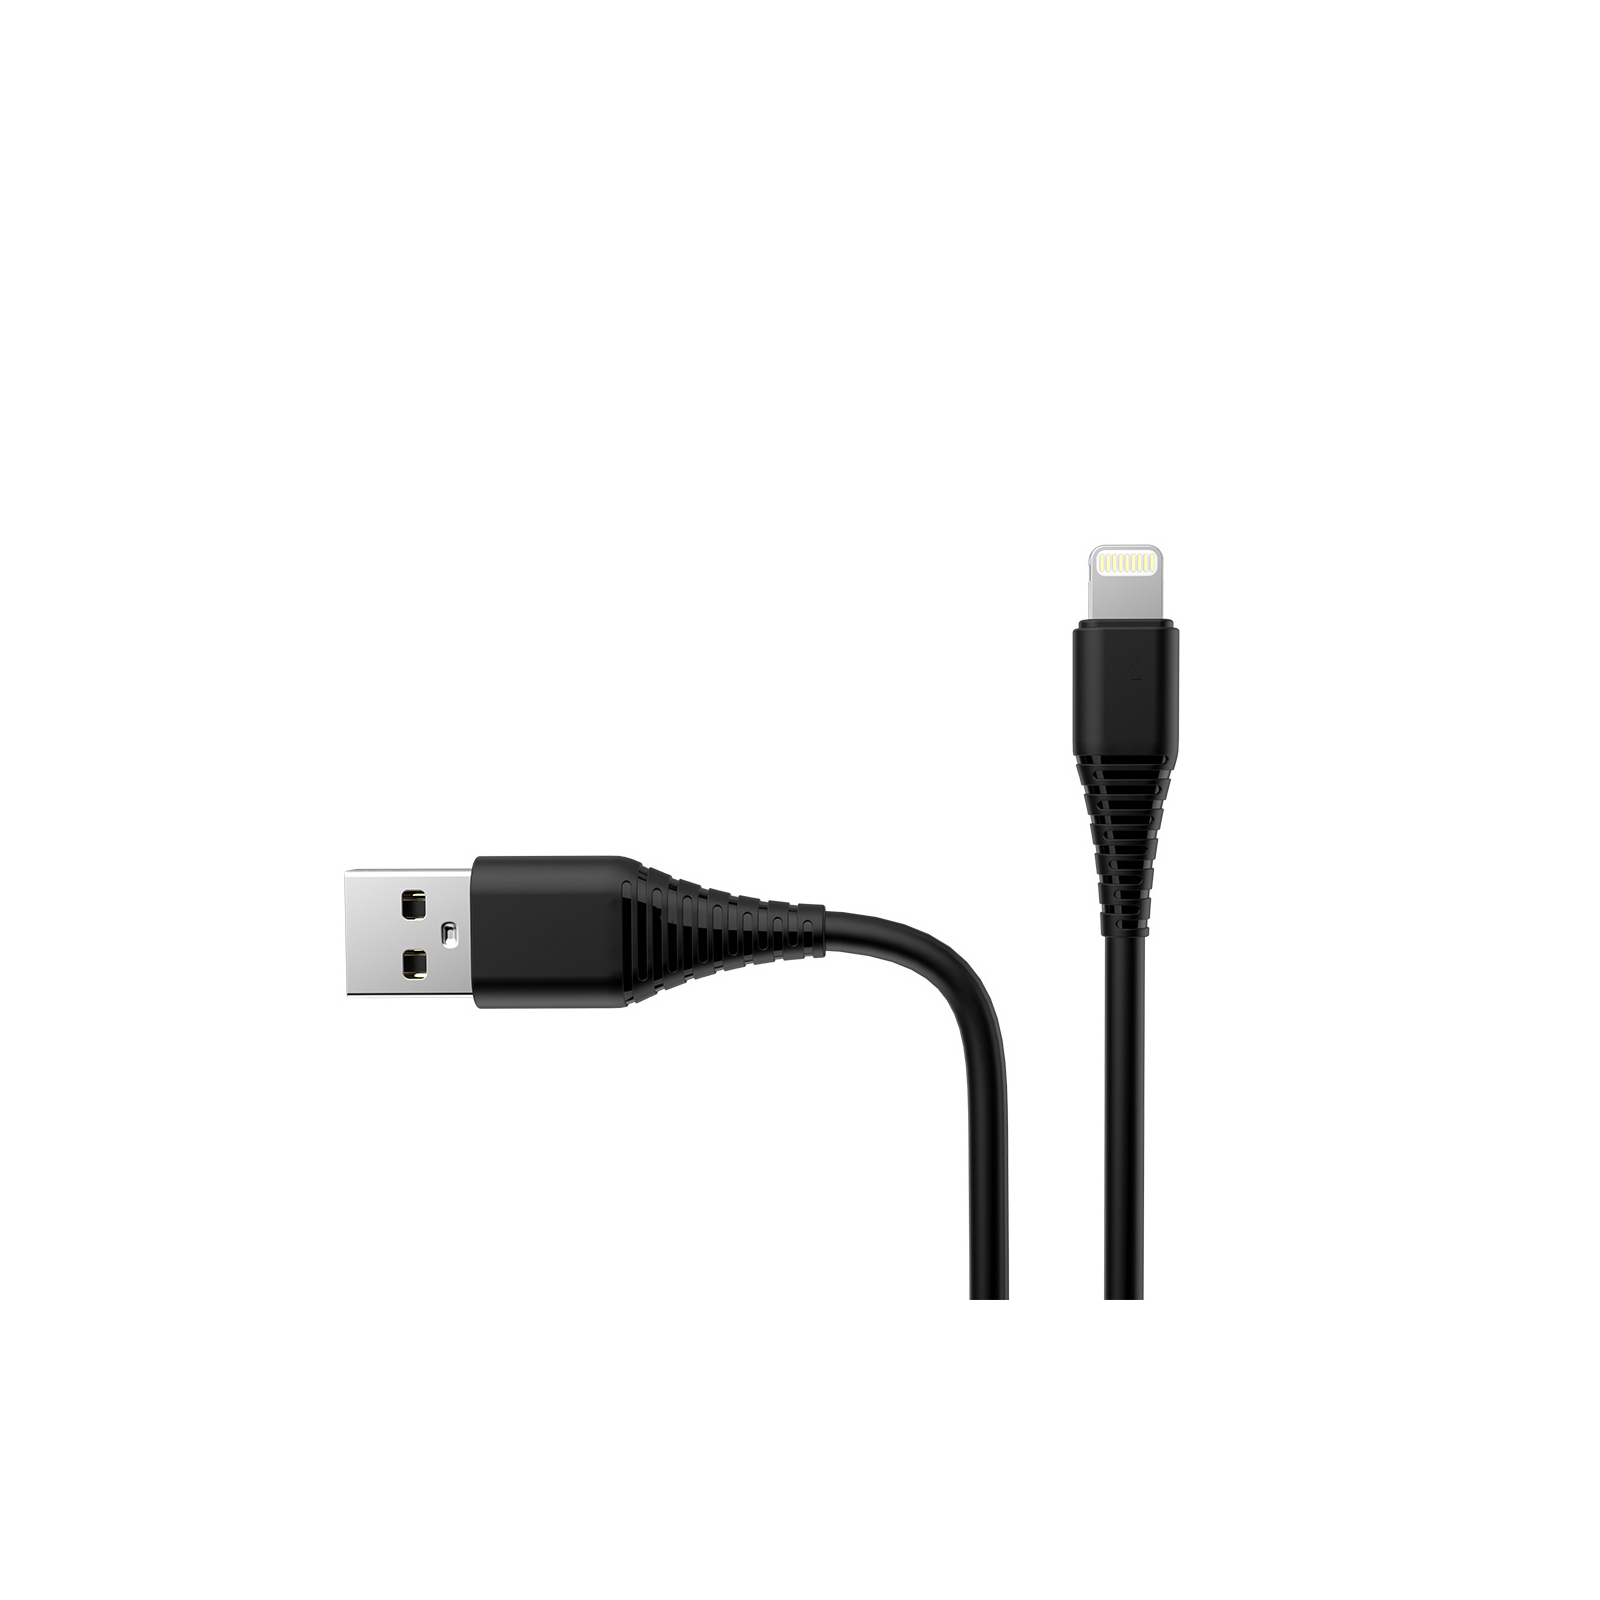 Дата кабель USB 2.0 AM to Lightning 1.0m black ColorWay (CW-CBUL024-BK) изображение 3